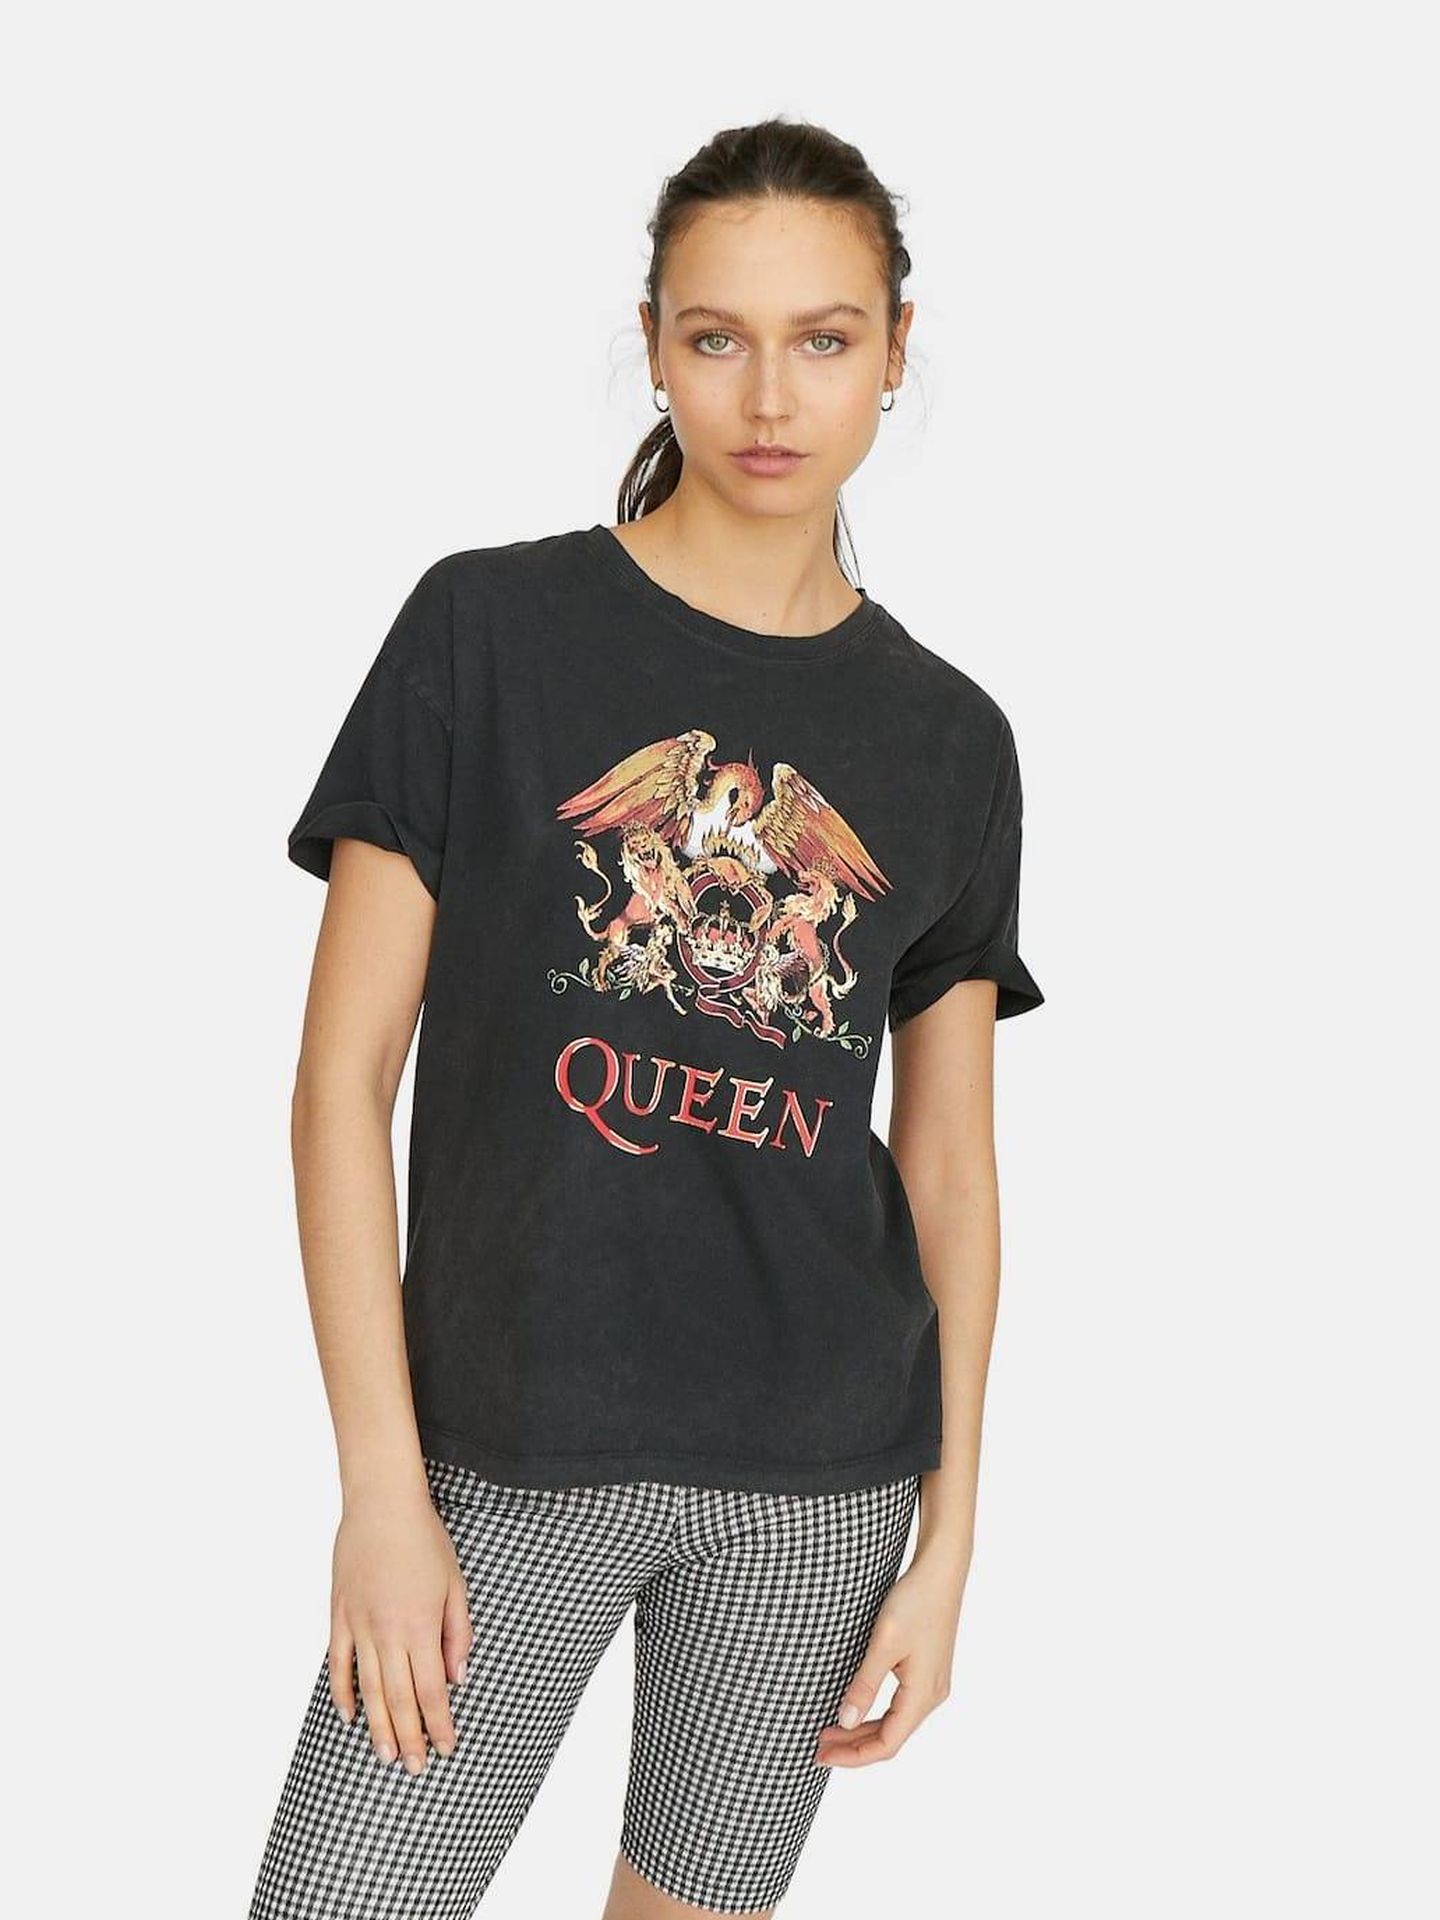 Camiseta de Queen.